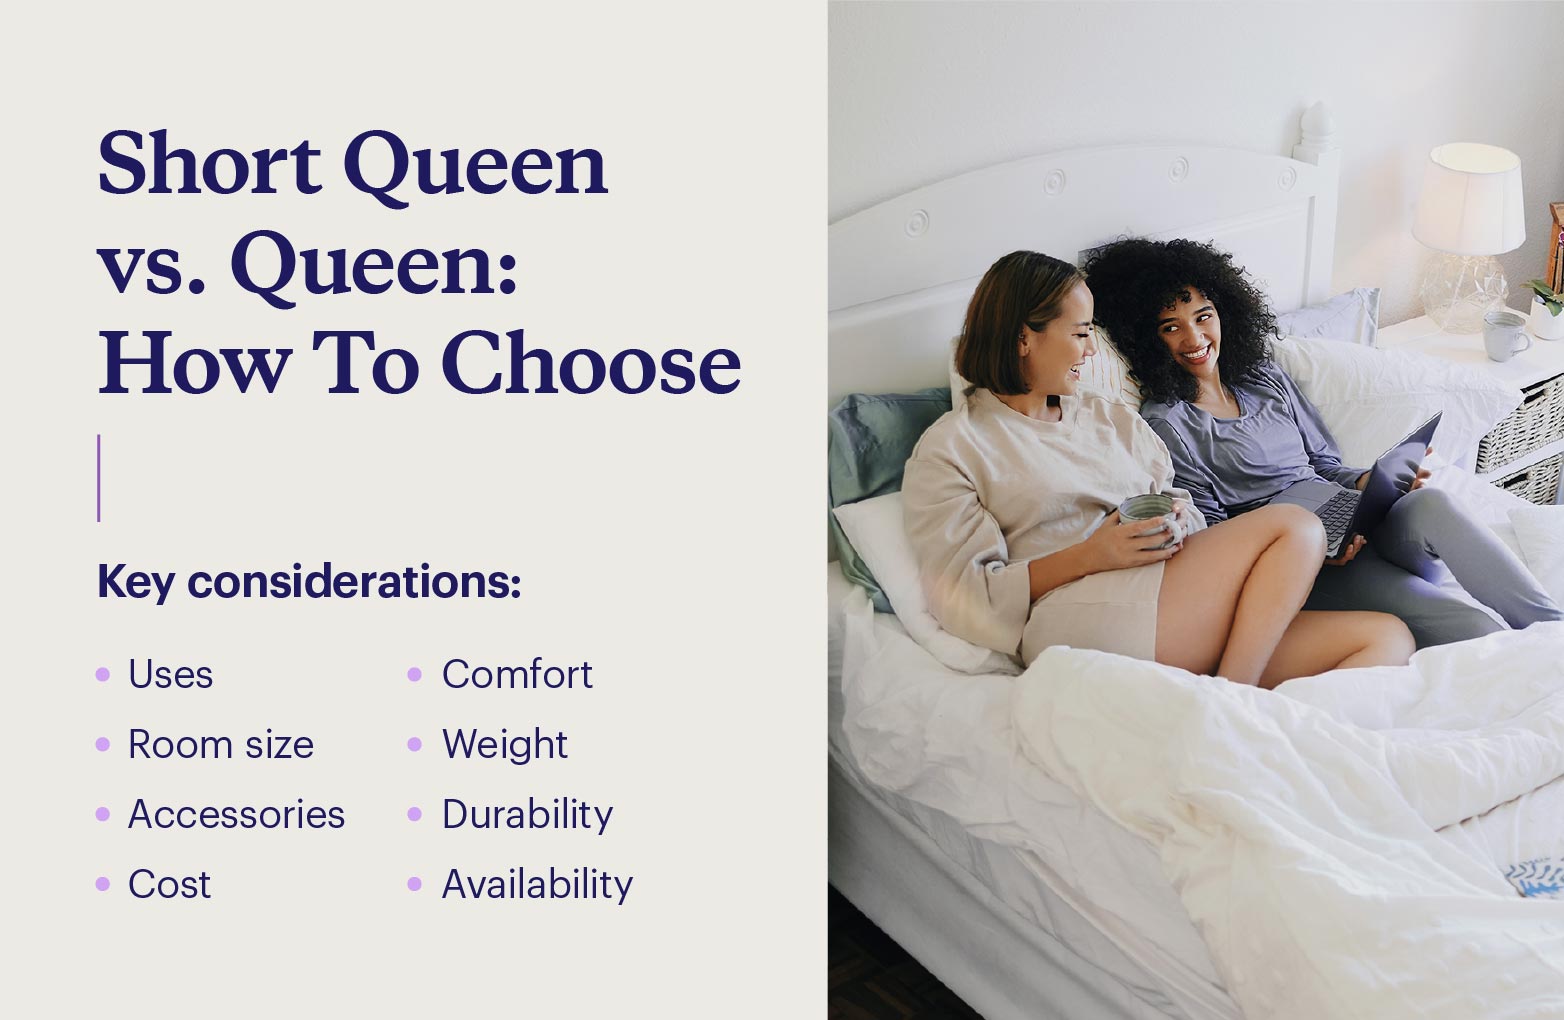 Graphic describing key considerations for choosing between a short queen and queen mattress